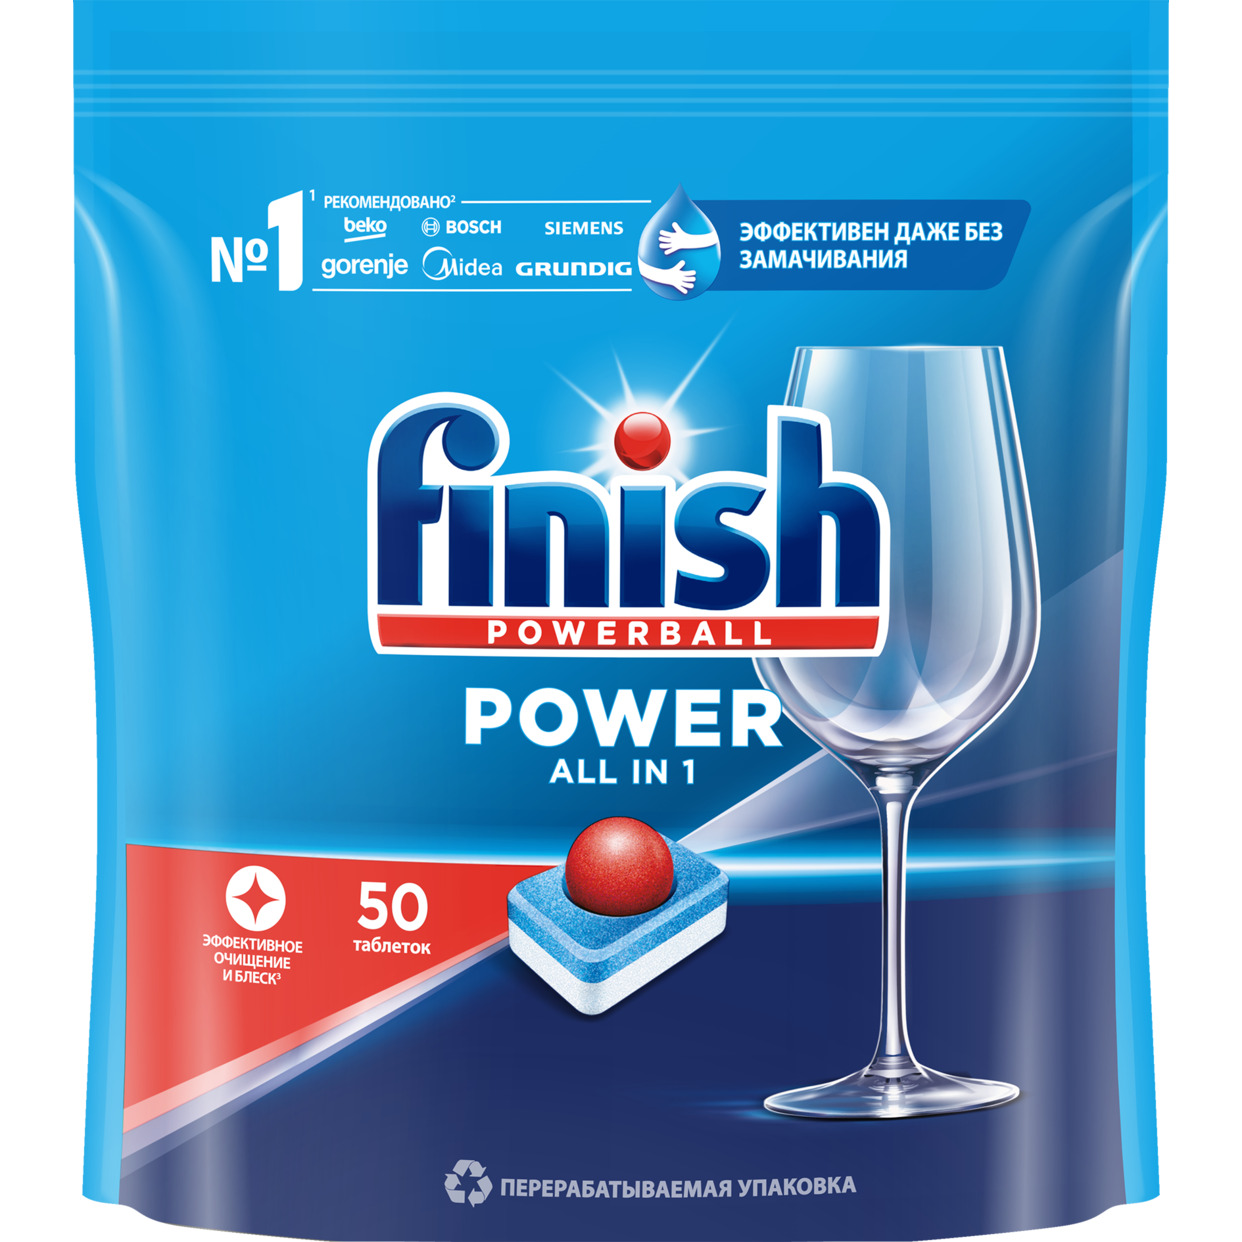 Средство FINISH Powerball Power Aio для мытья посуды для посудомоечных машин 50 таблеток по акции в Пятерочке